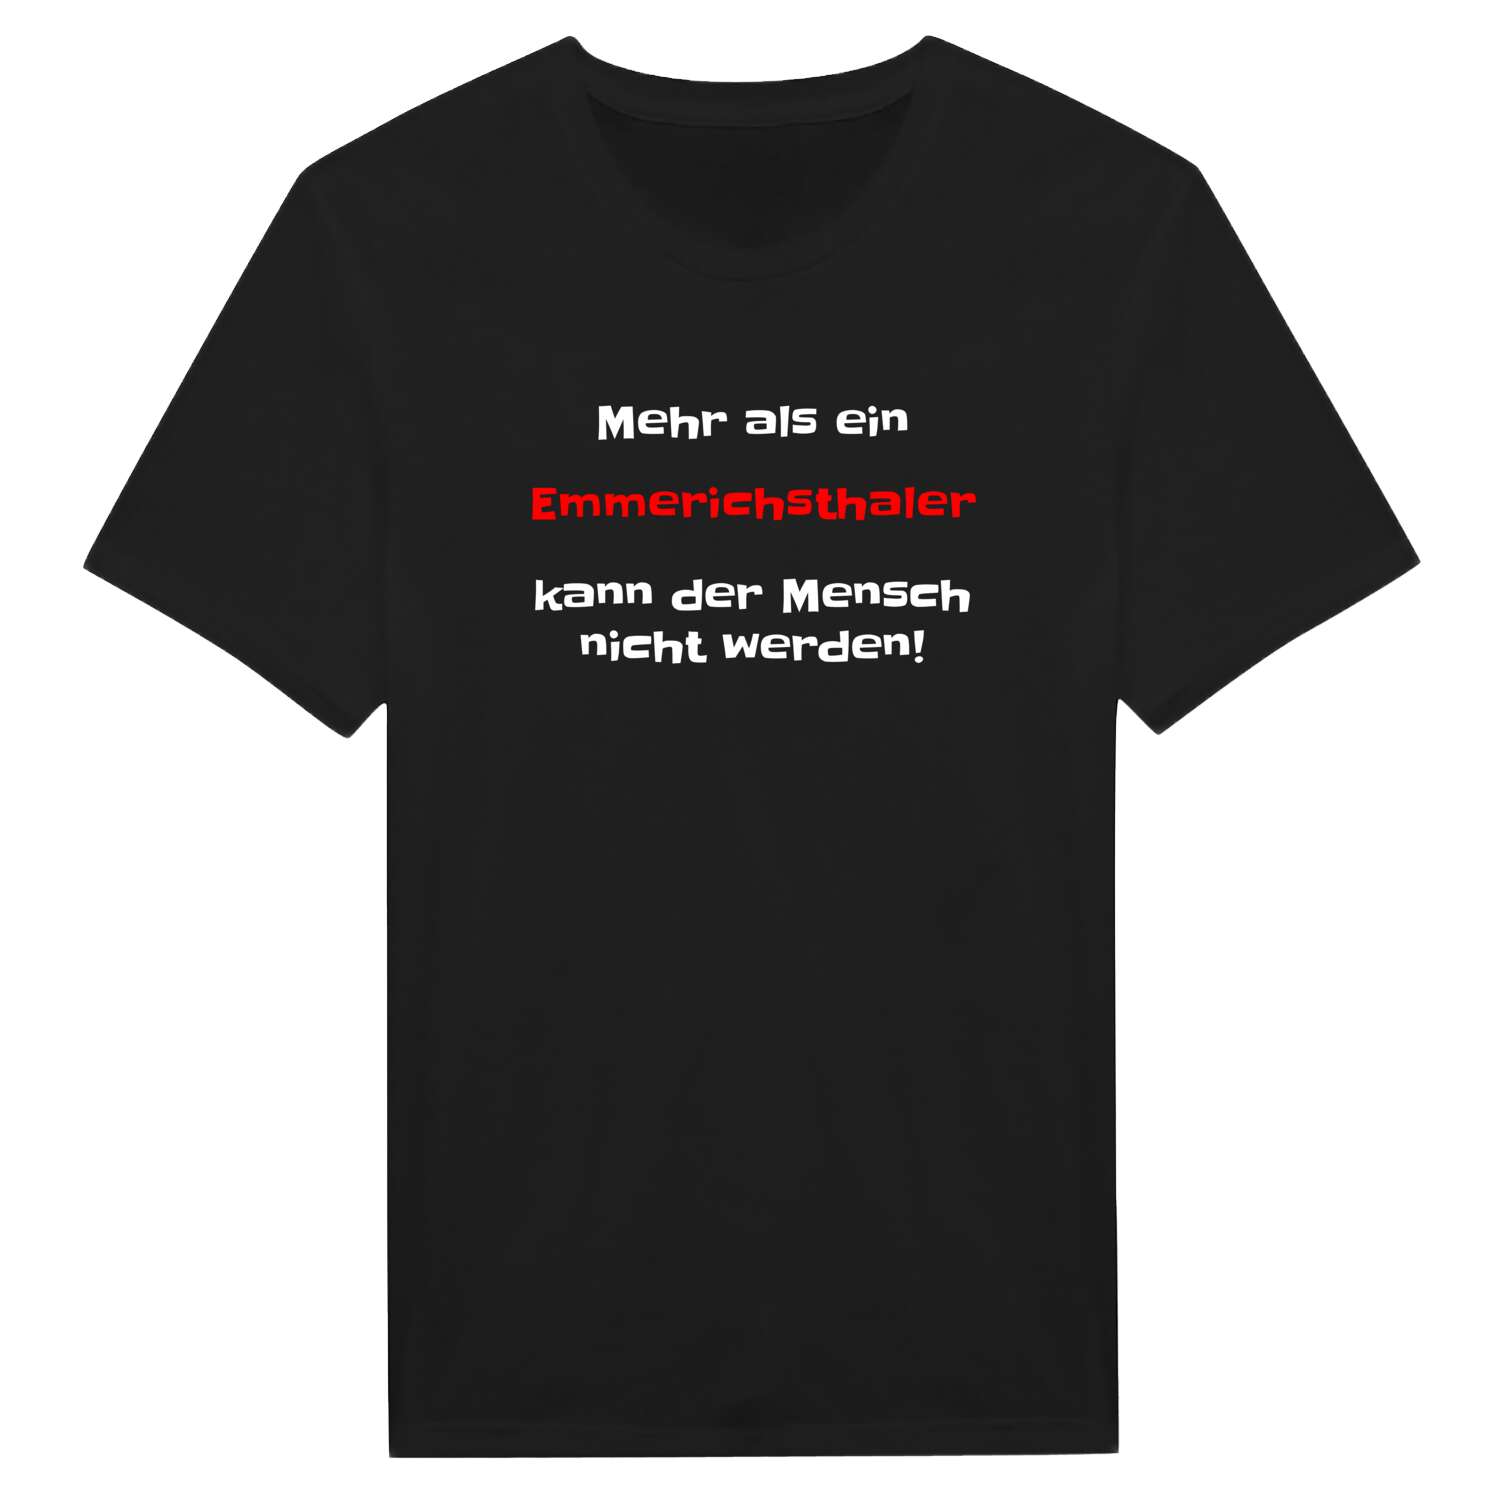 Emmerichsthal T-Shirt »Mehr als ein«